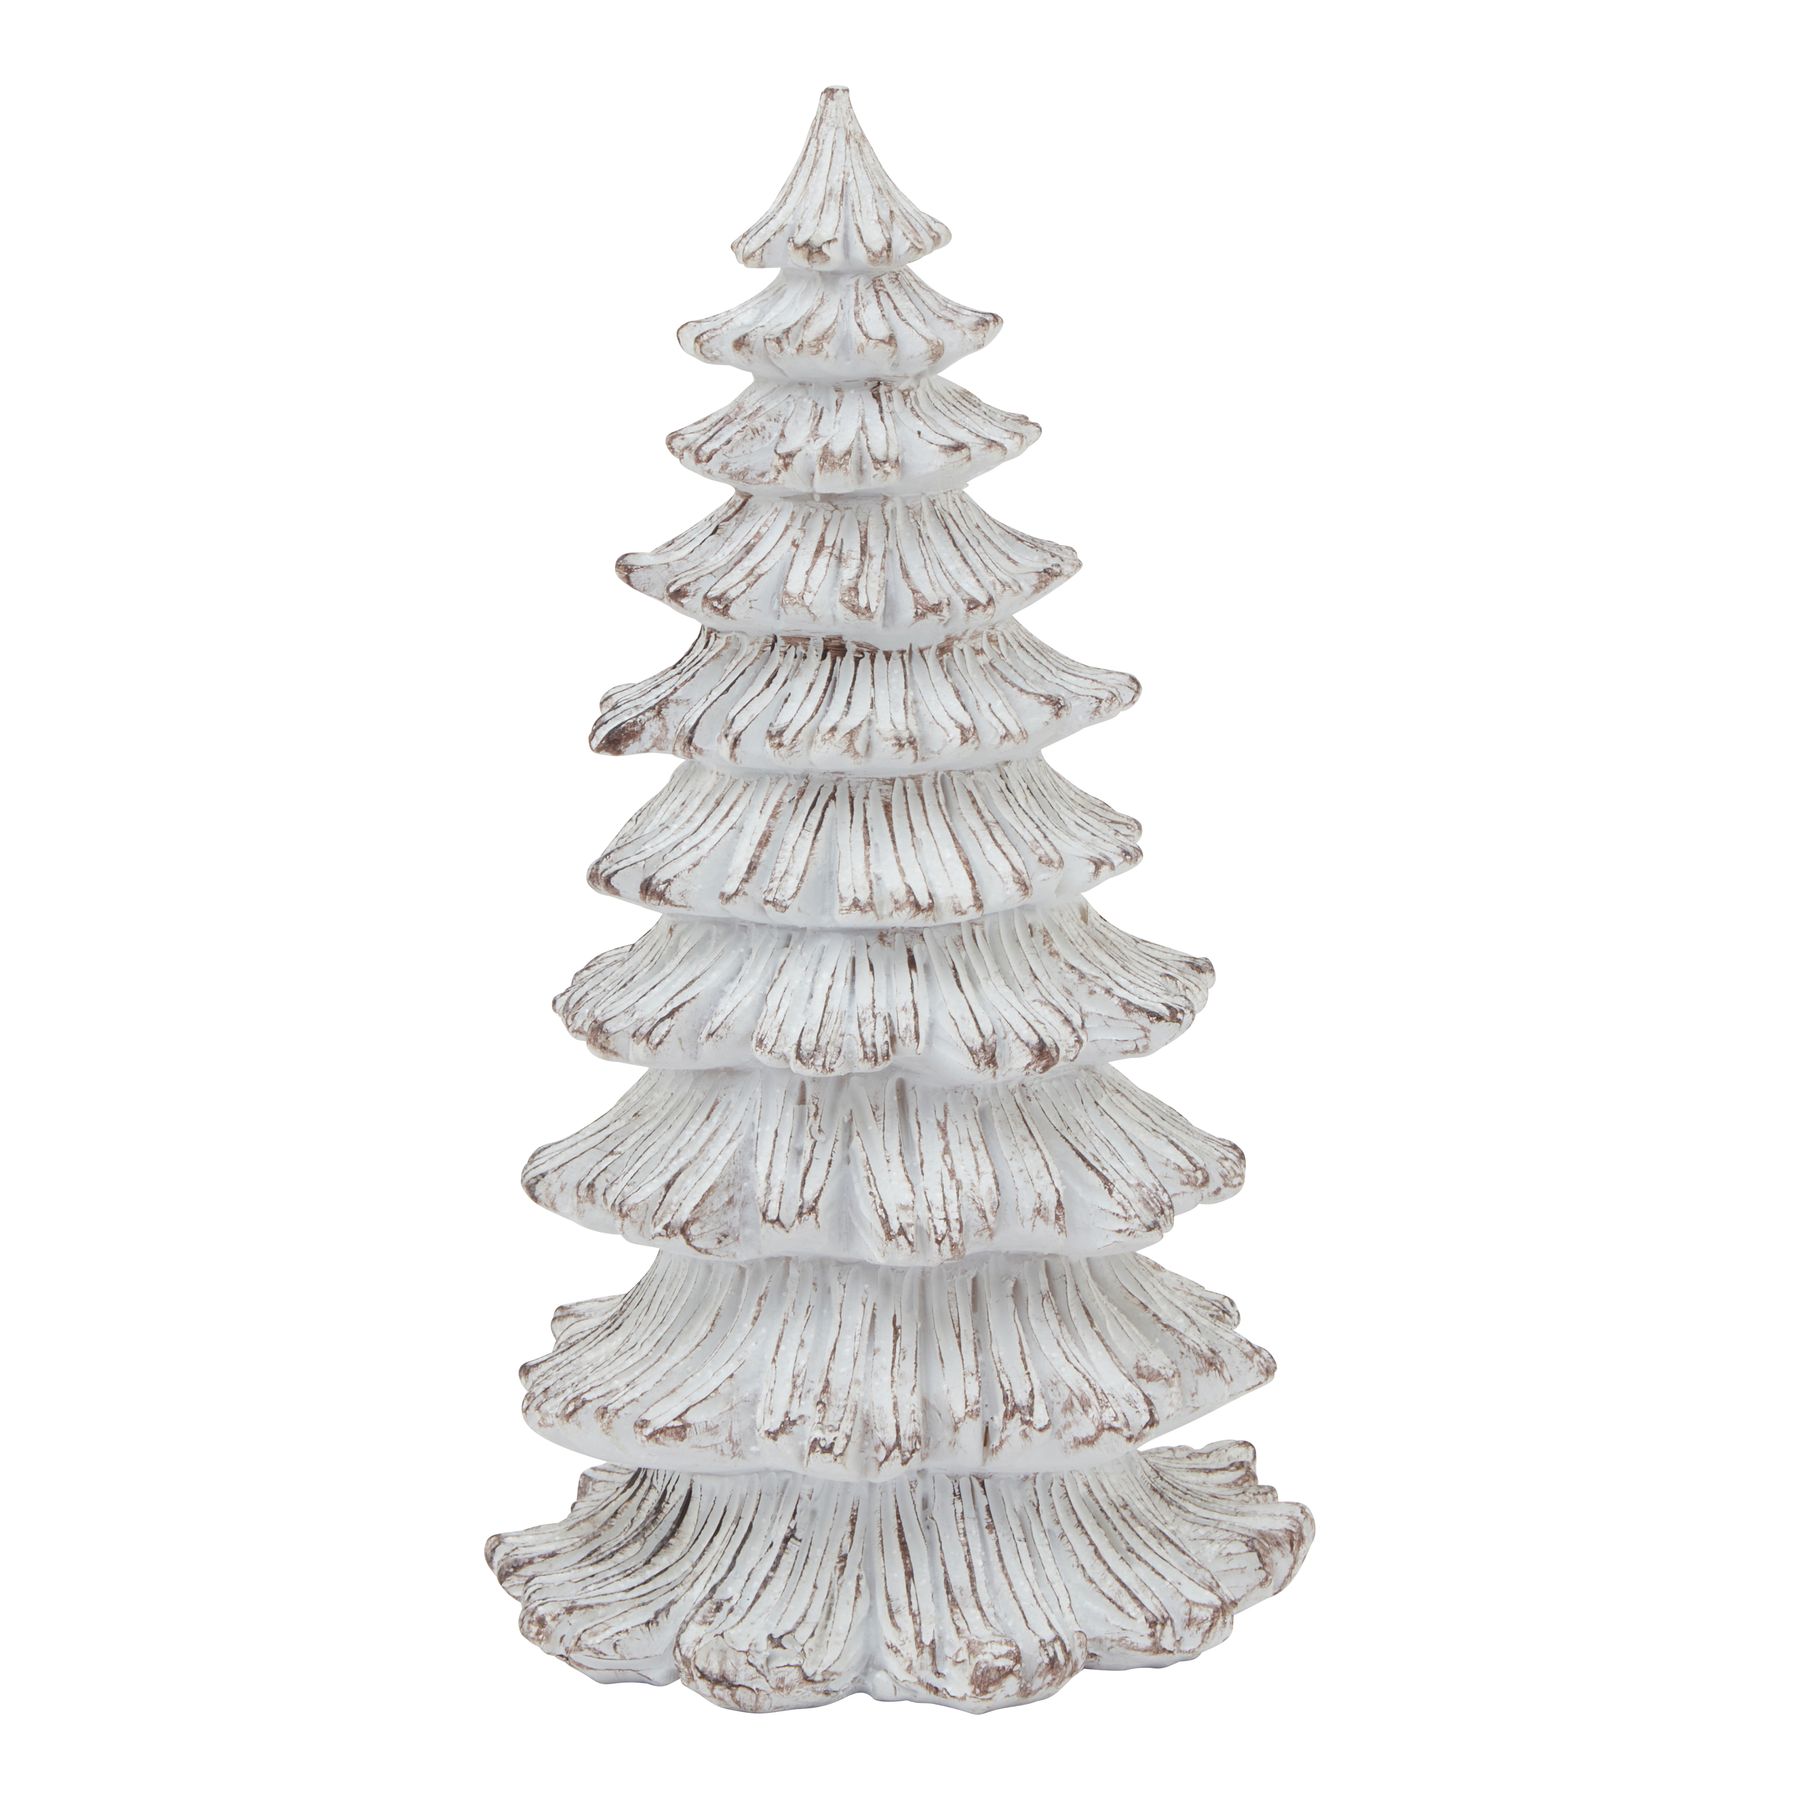 Medium Snowy Fir Tree Sculpture - Image 1